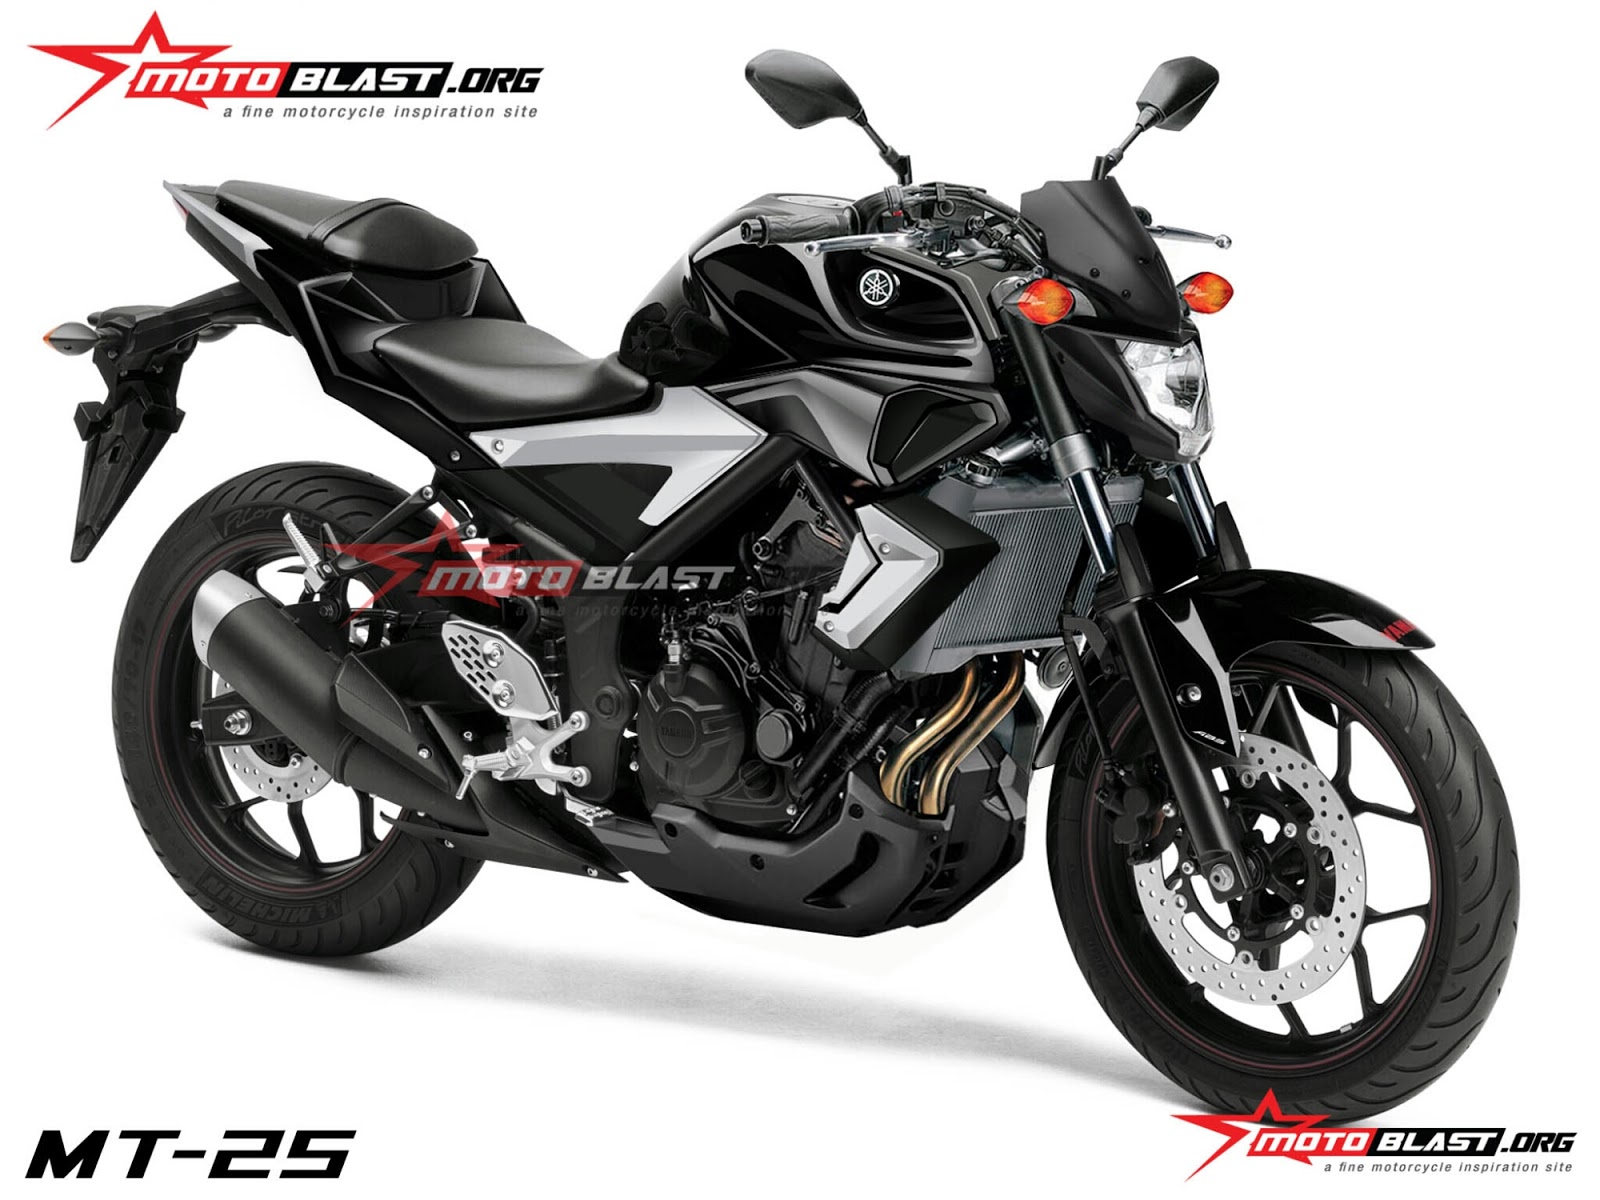 Foto Modifikasi Motor Yamaha MT 25 Terbaru 2015